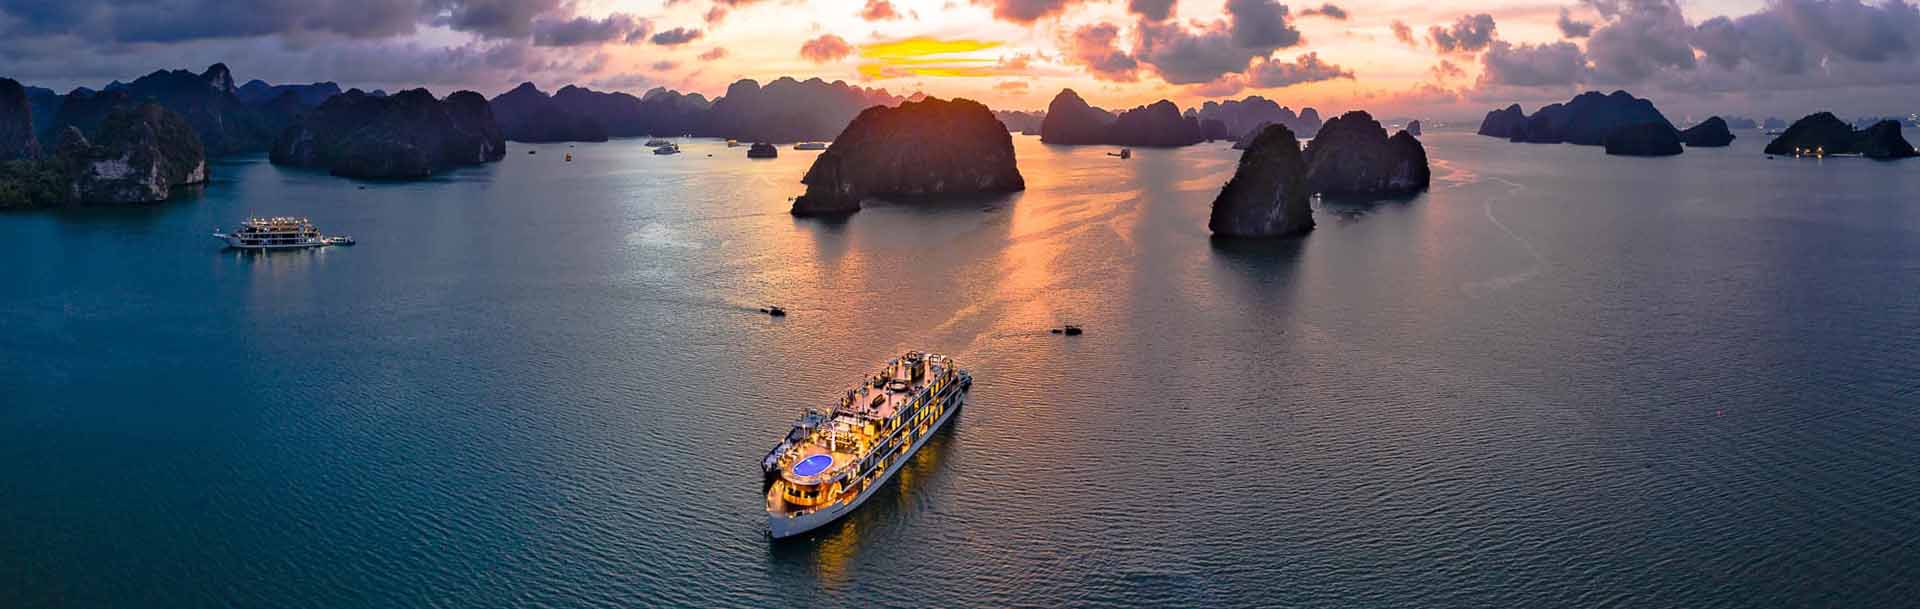 Trọn bộ kinh nghiệm du lịch Vịnh Hạ Long - Khám phá kỳ quan thiên nhiên tuyệt đẹp của Việt Nam